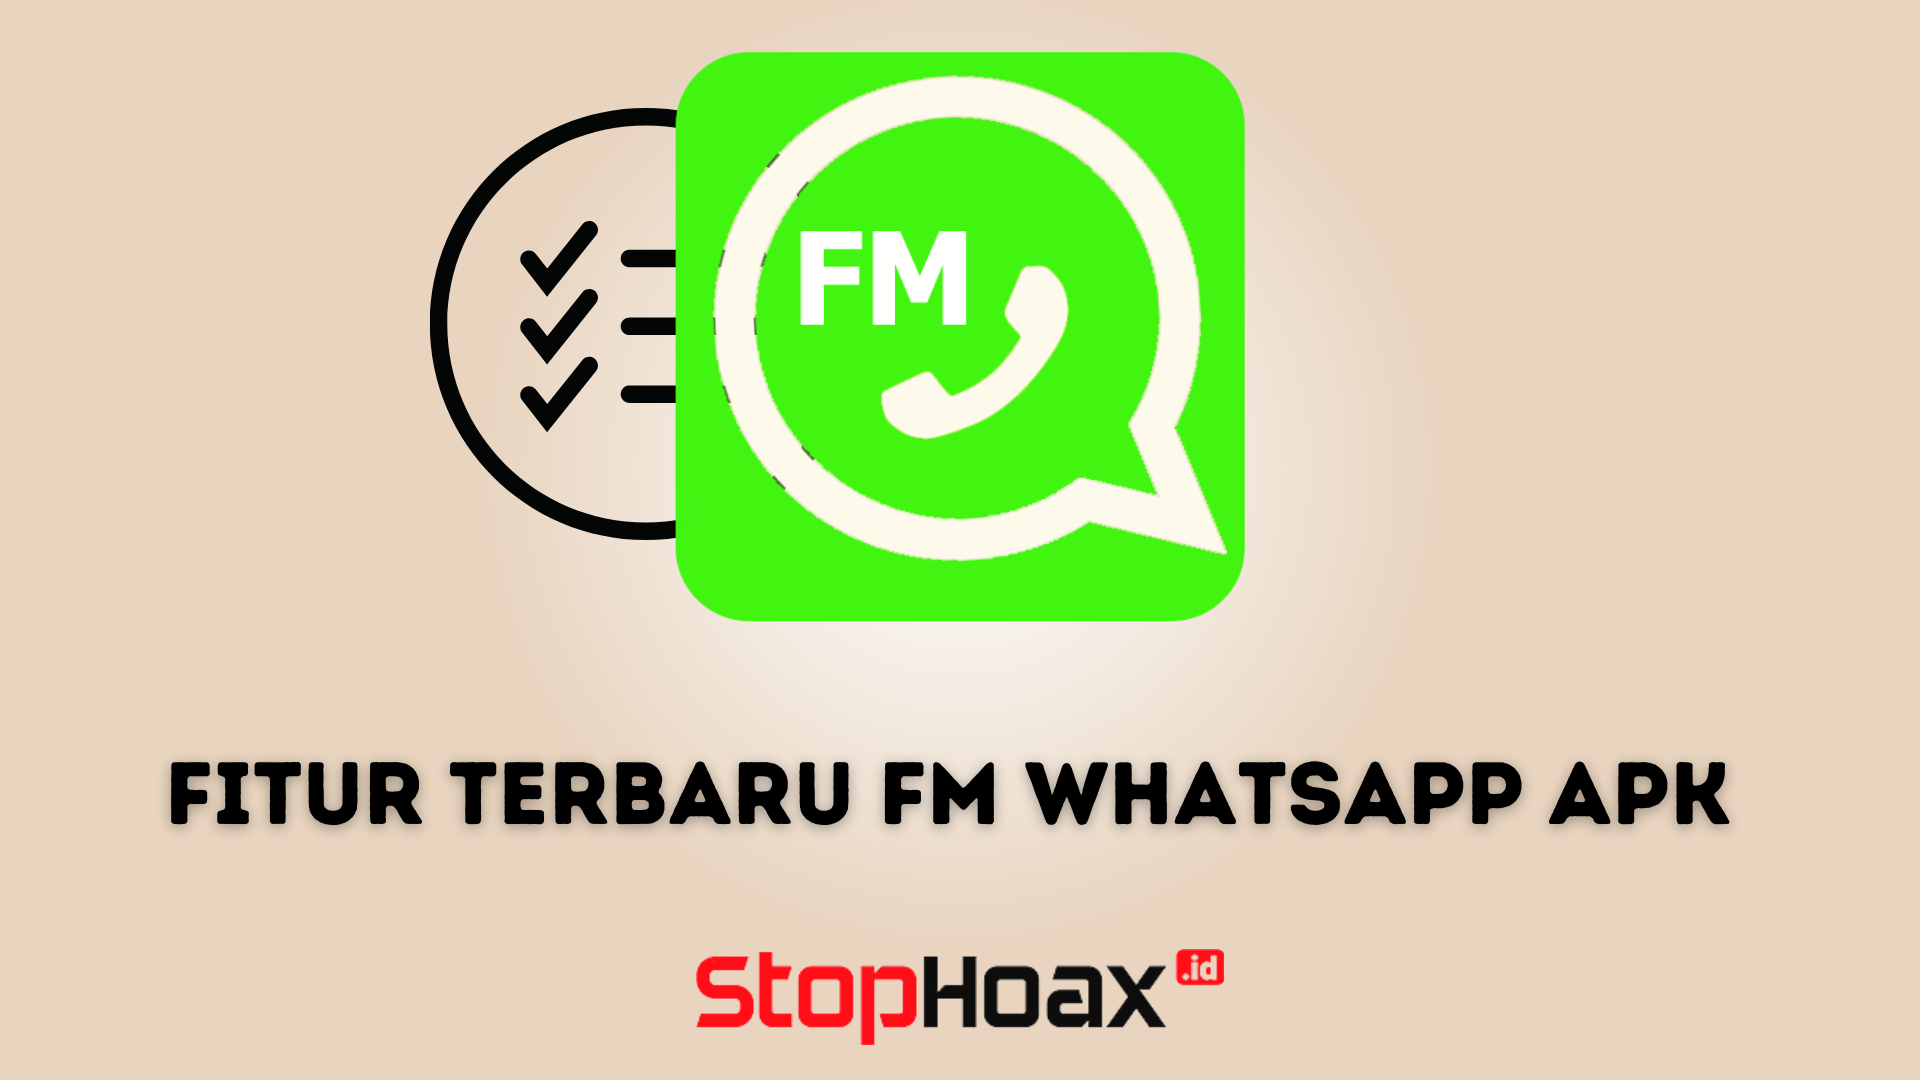 Fitur Terbaru FM WhatsApp APK di Android yang Harus Kamu Ketahui